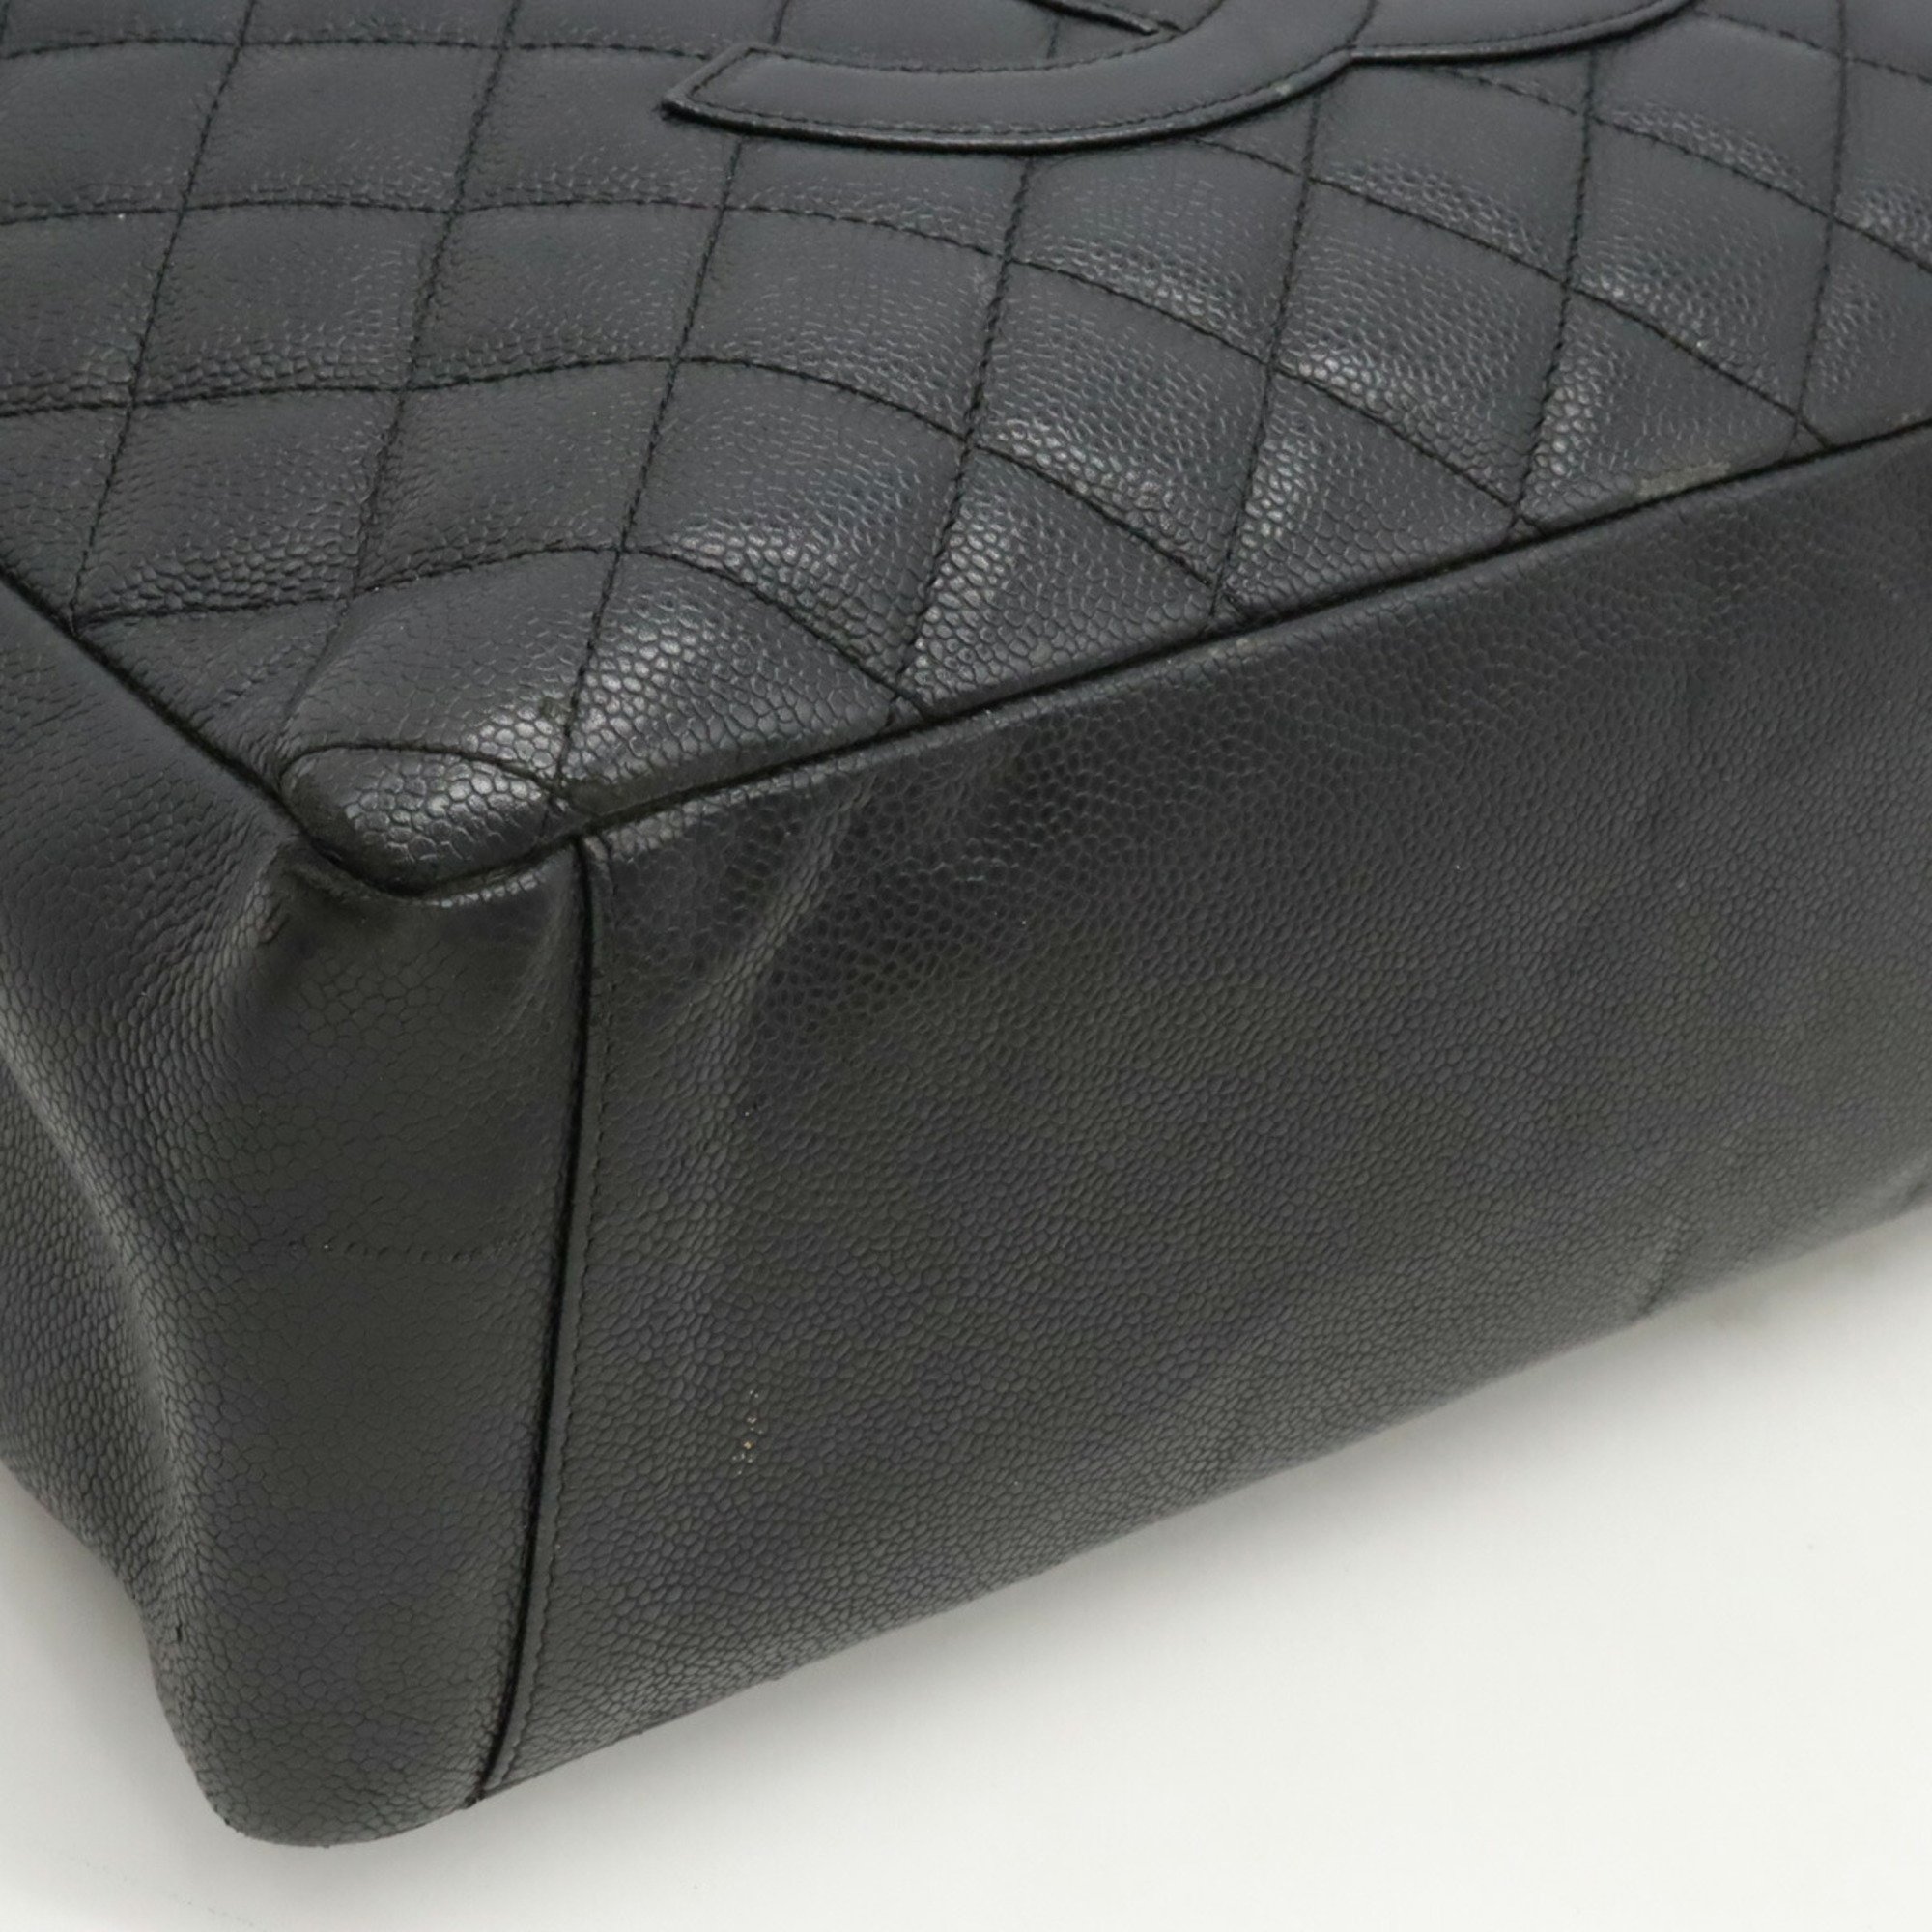 CHANEL Chanel Matelasse Coco Mark GST Tote Chain Bag Shoulder Caviar Skin Black A50995